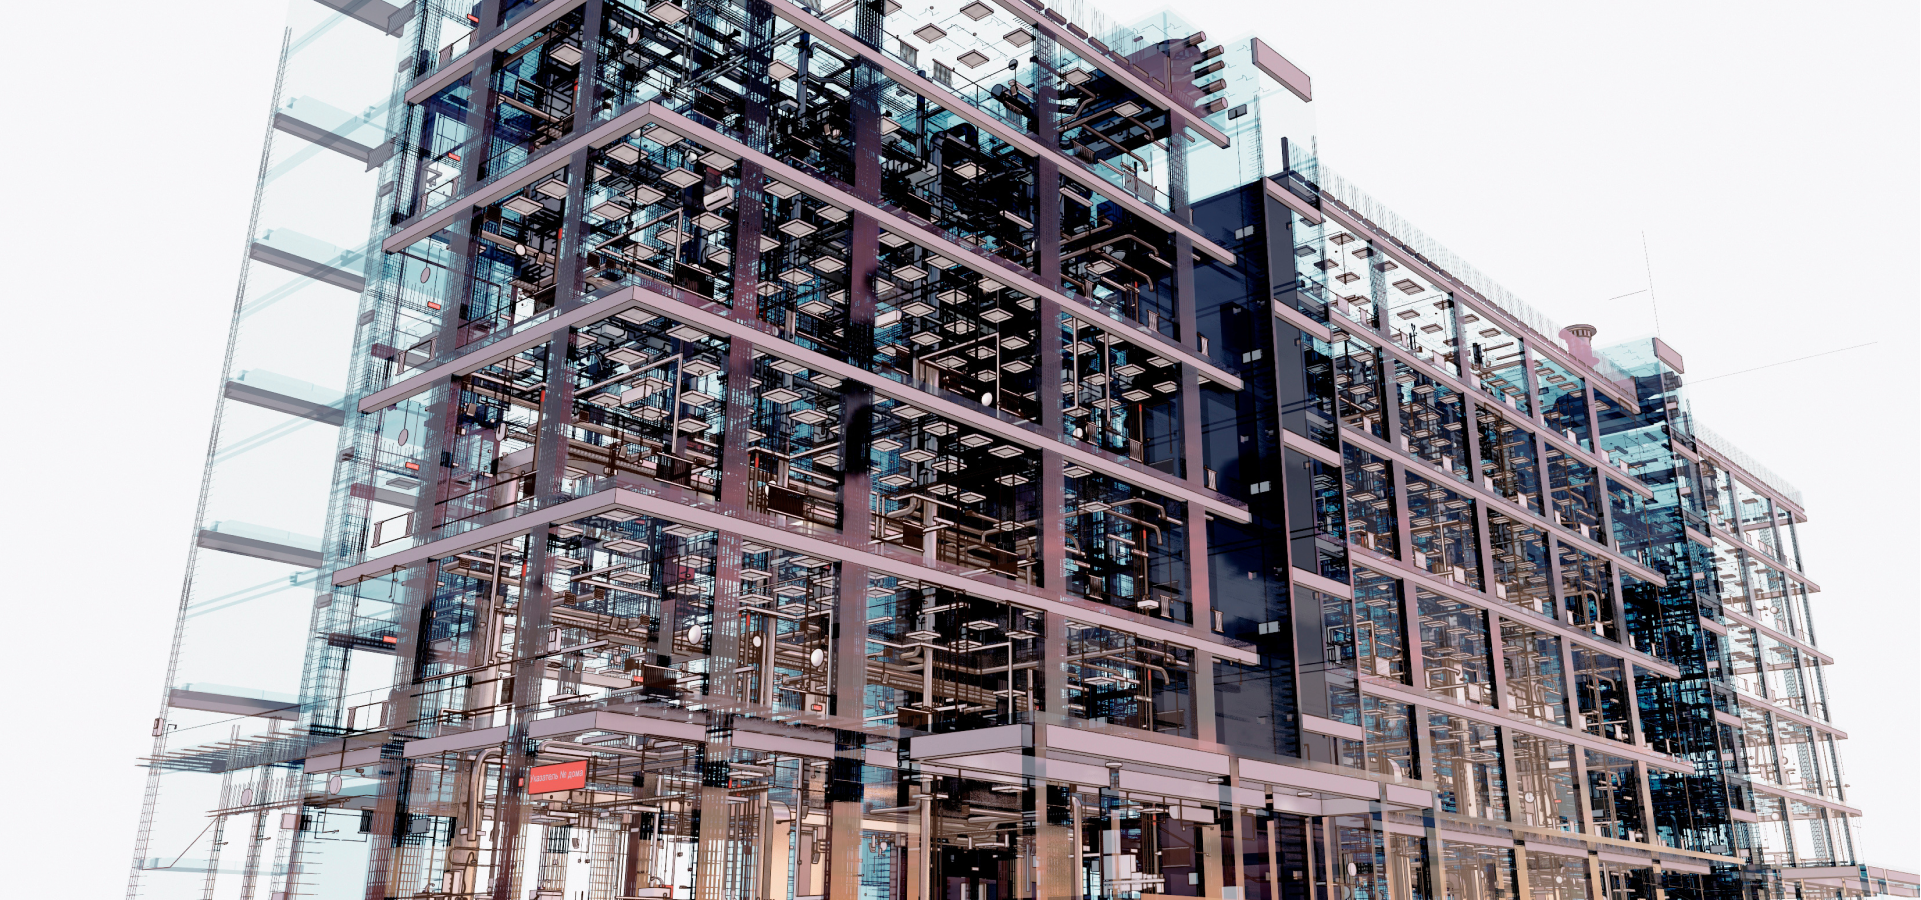 Un modello 3D degli interni di un edificio di uffici con tubature e infrastrutture visibili